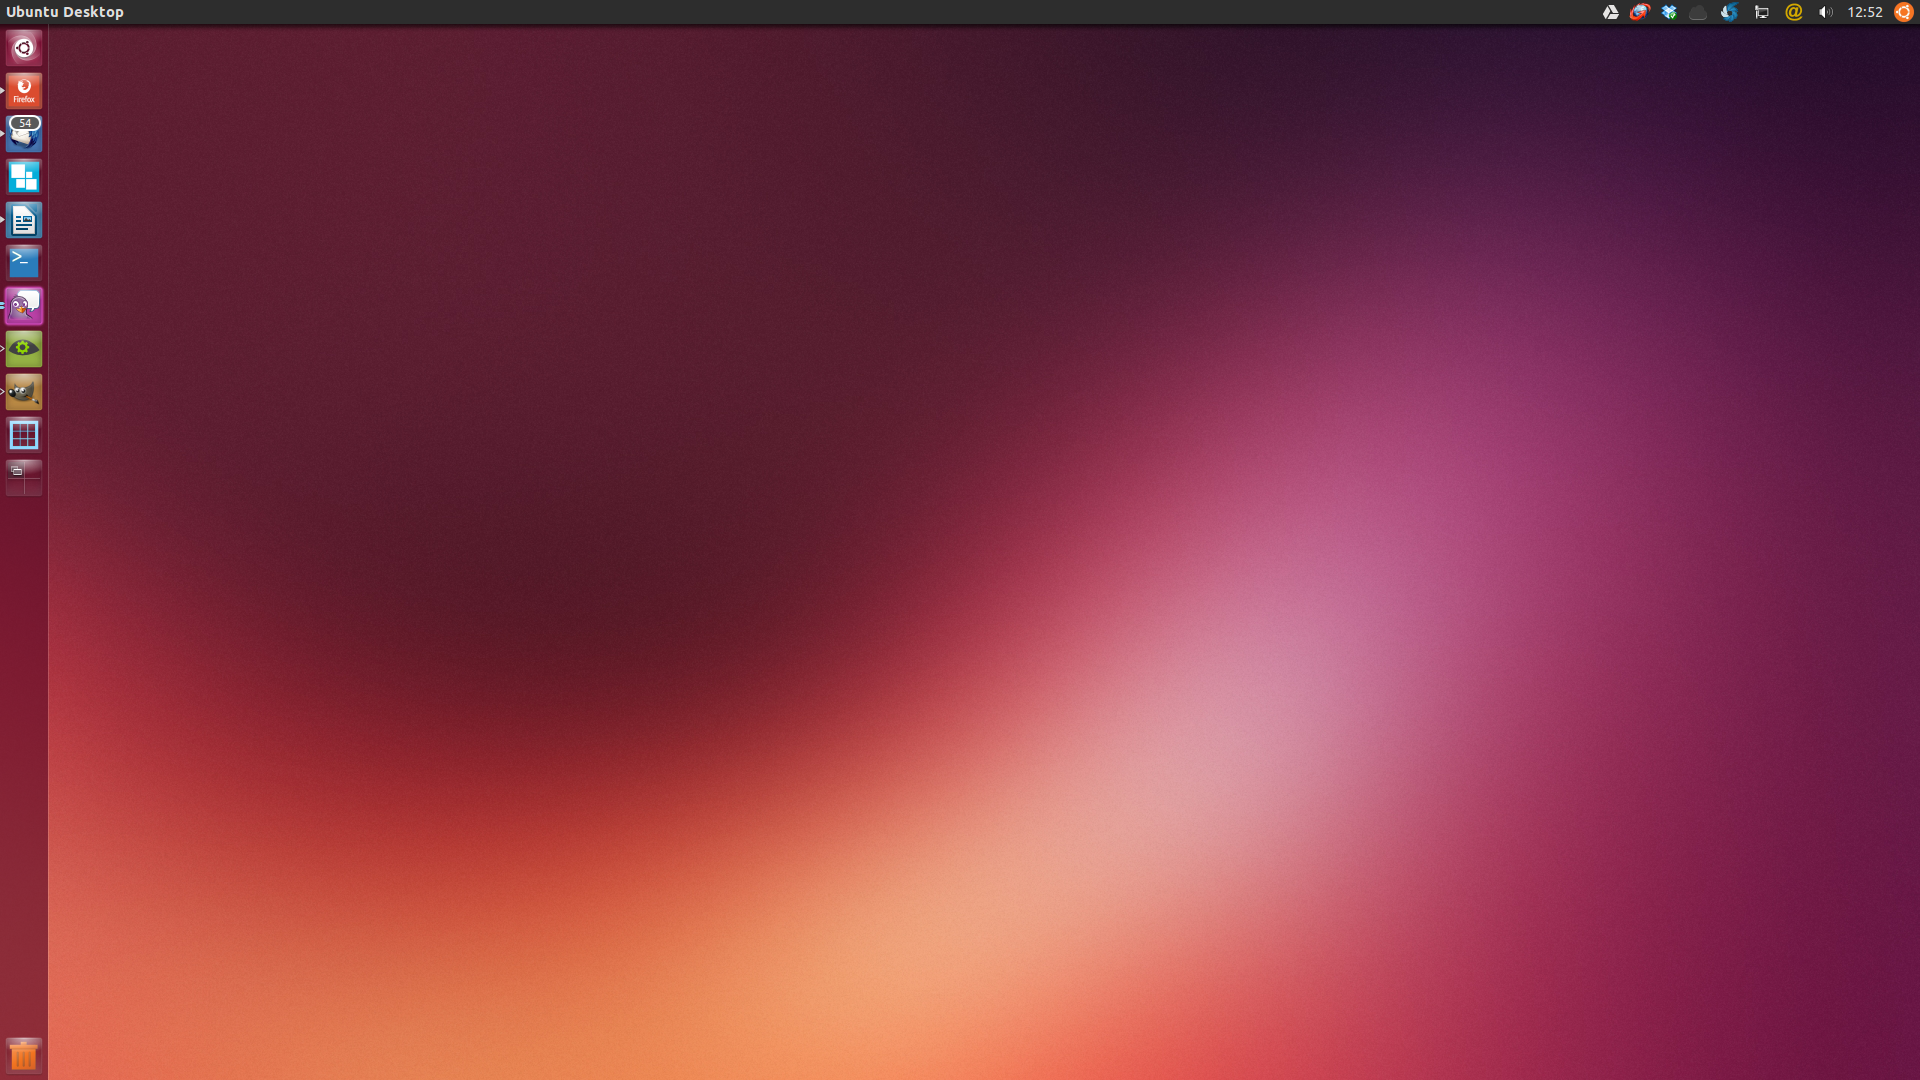 Official Ubuntu Download